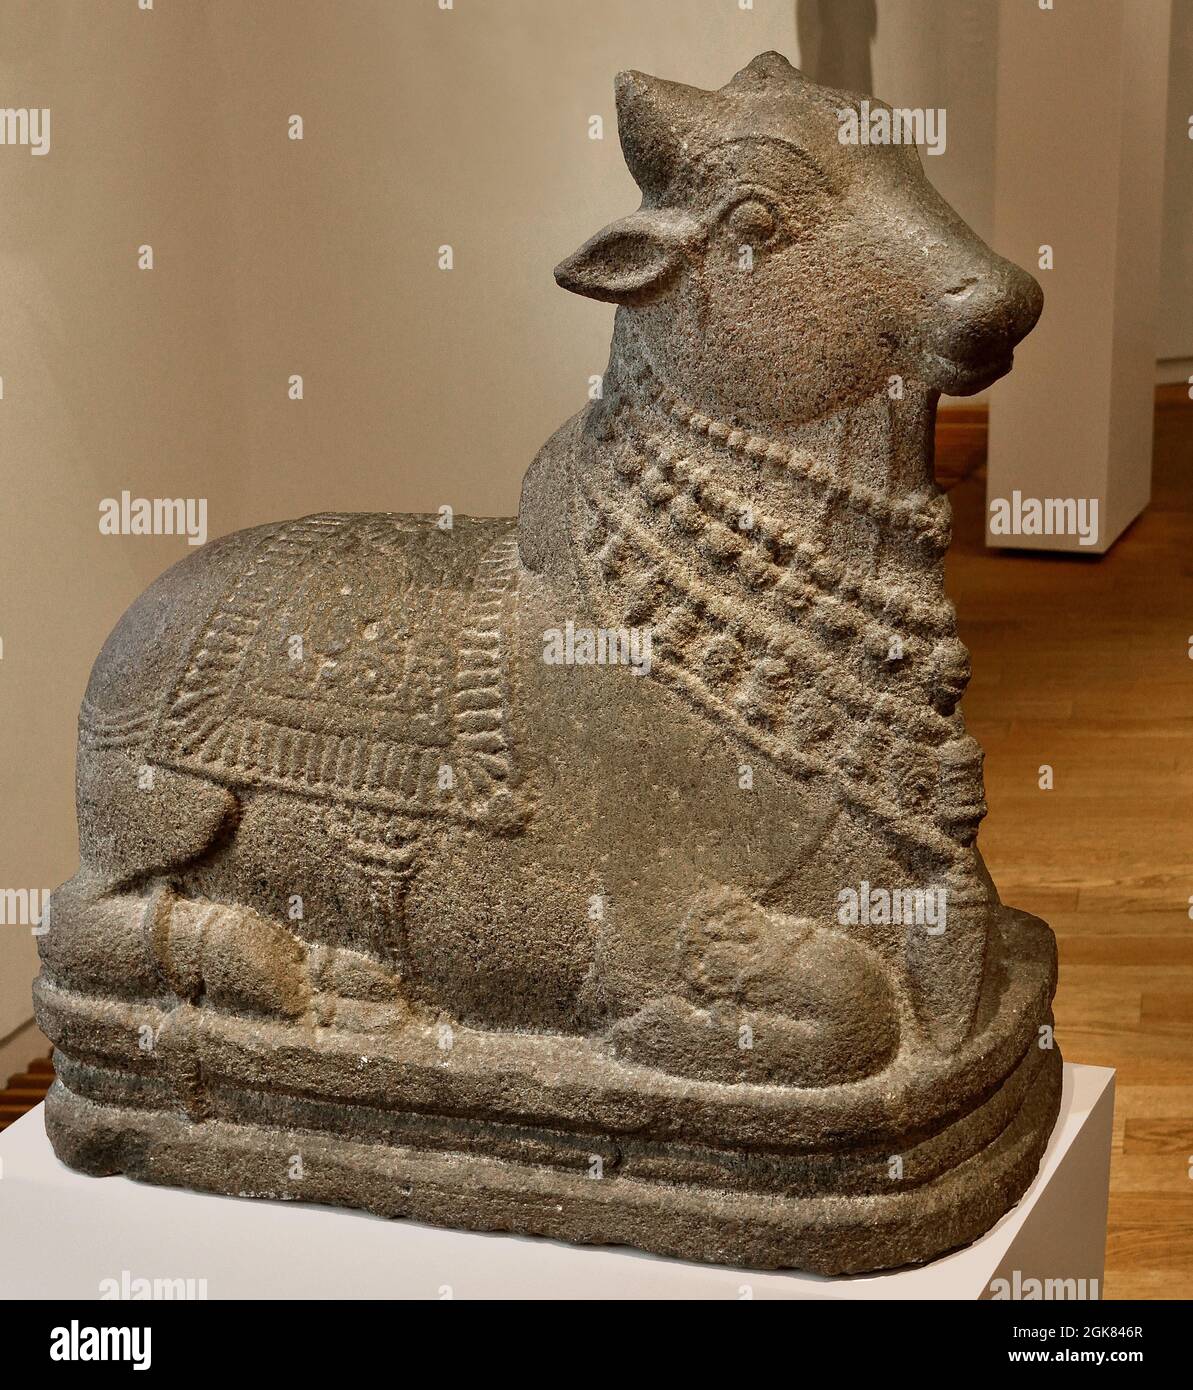 toro reclinabile, ( il monte di Shiva è il toro: Il simbolo della forza e della fertilità. Il toro è sfruttato come un monte di dio. ) 1000 - 1200 , stile Chola, arenaria, 63.0cm x 64.0cm x 29.0cm, India, Tamil, Nadu. Foto Stock